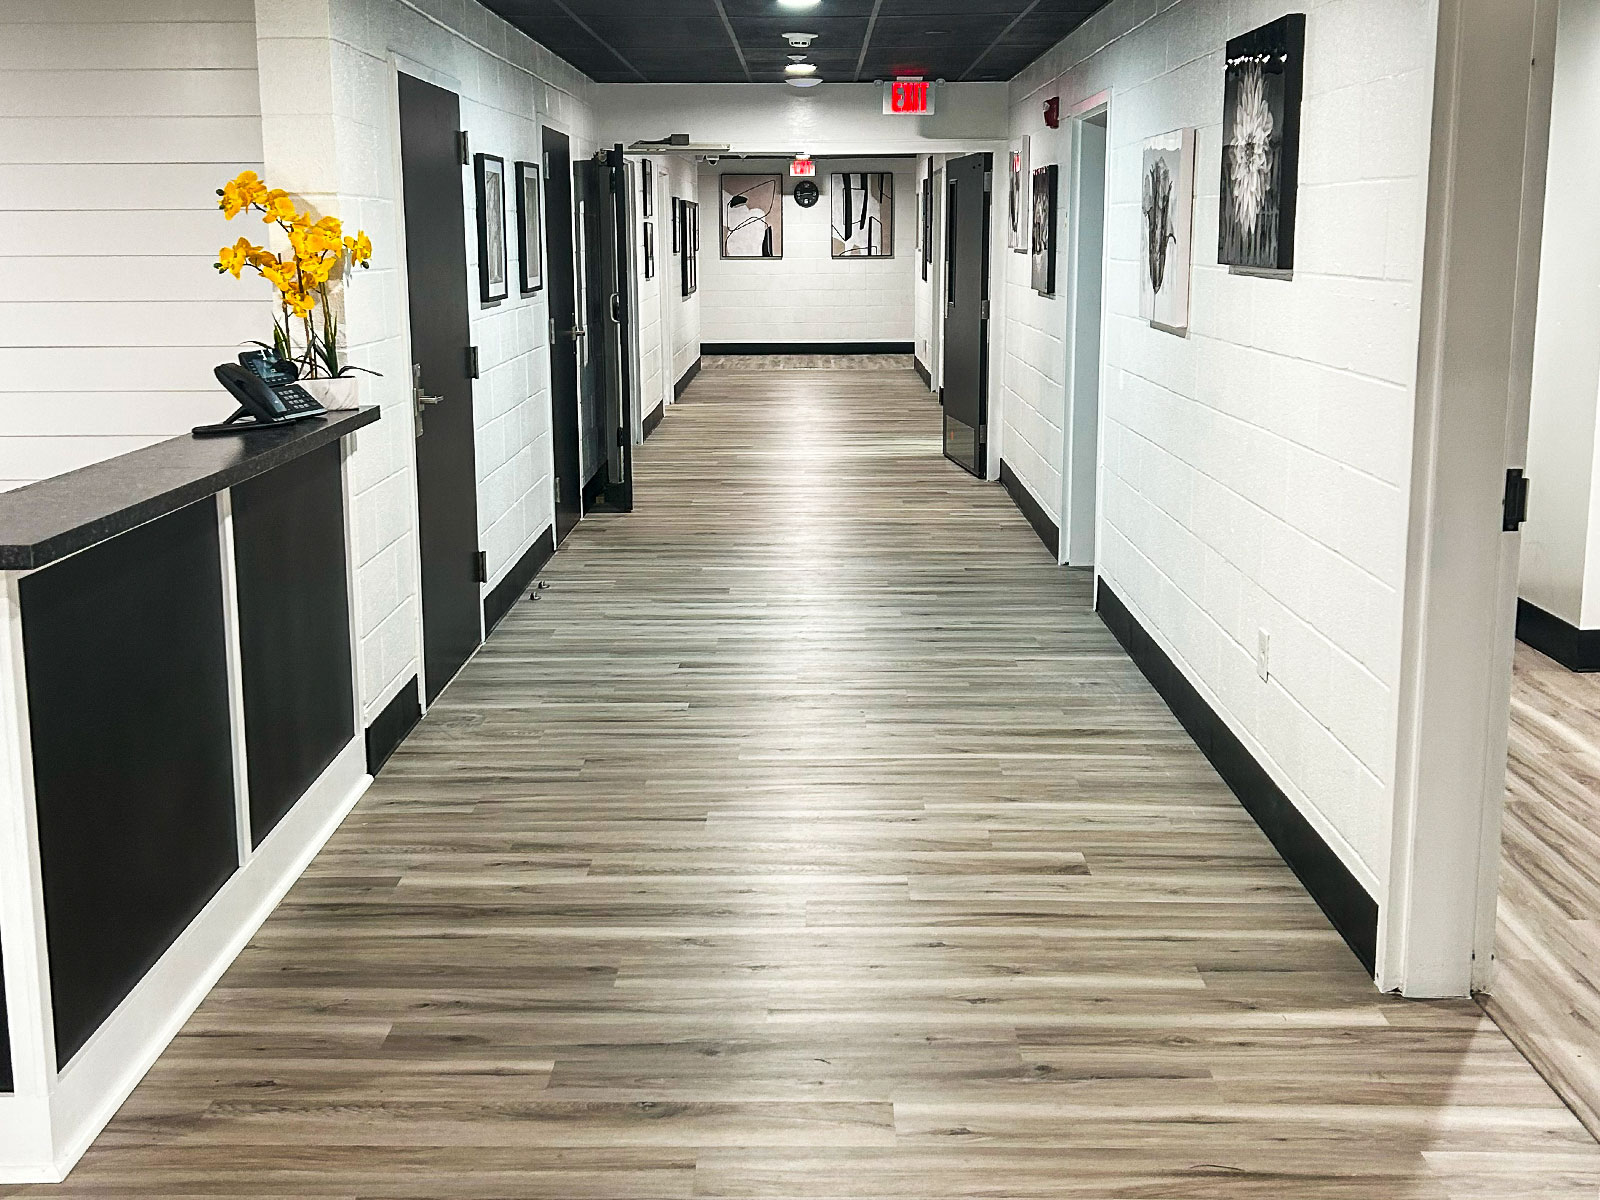 Hallway to Patient Rooms